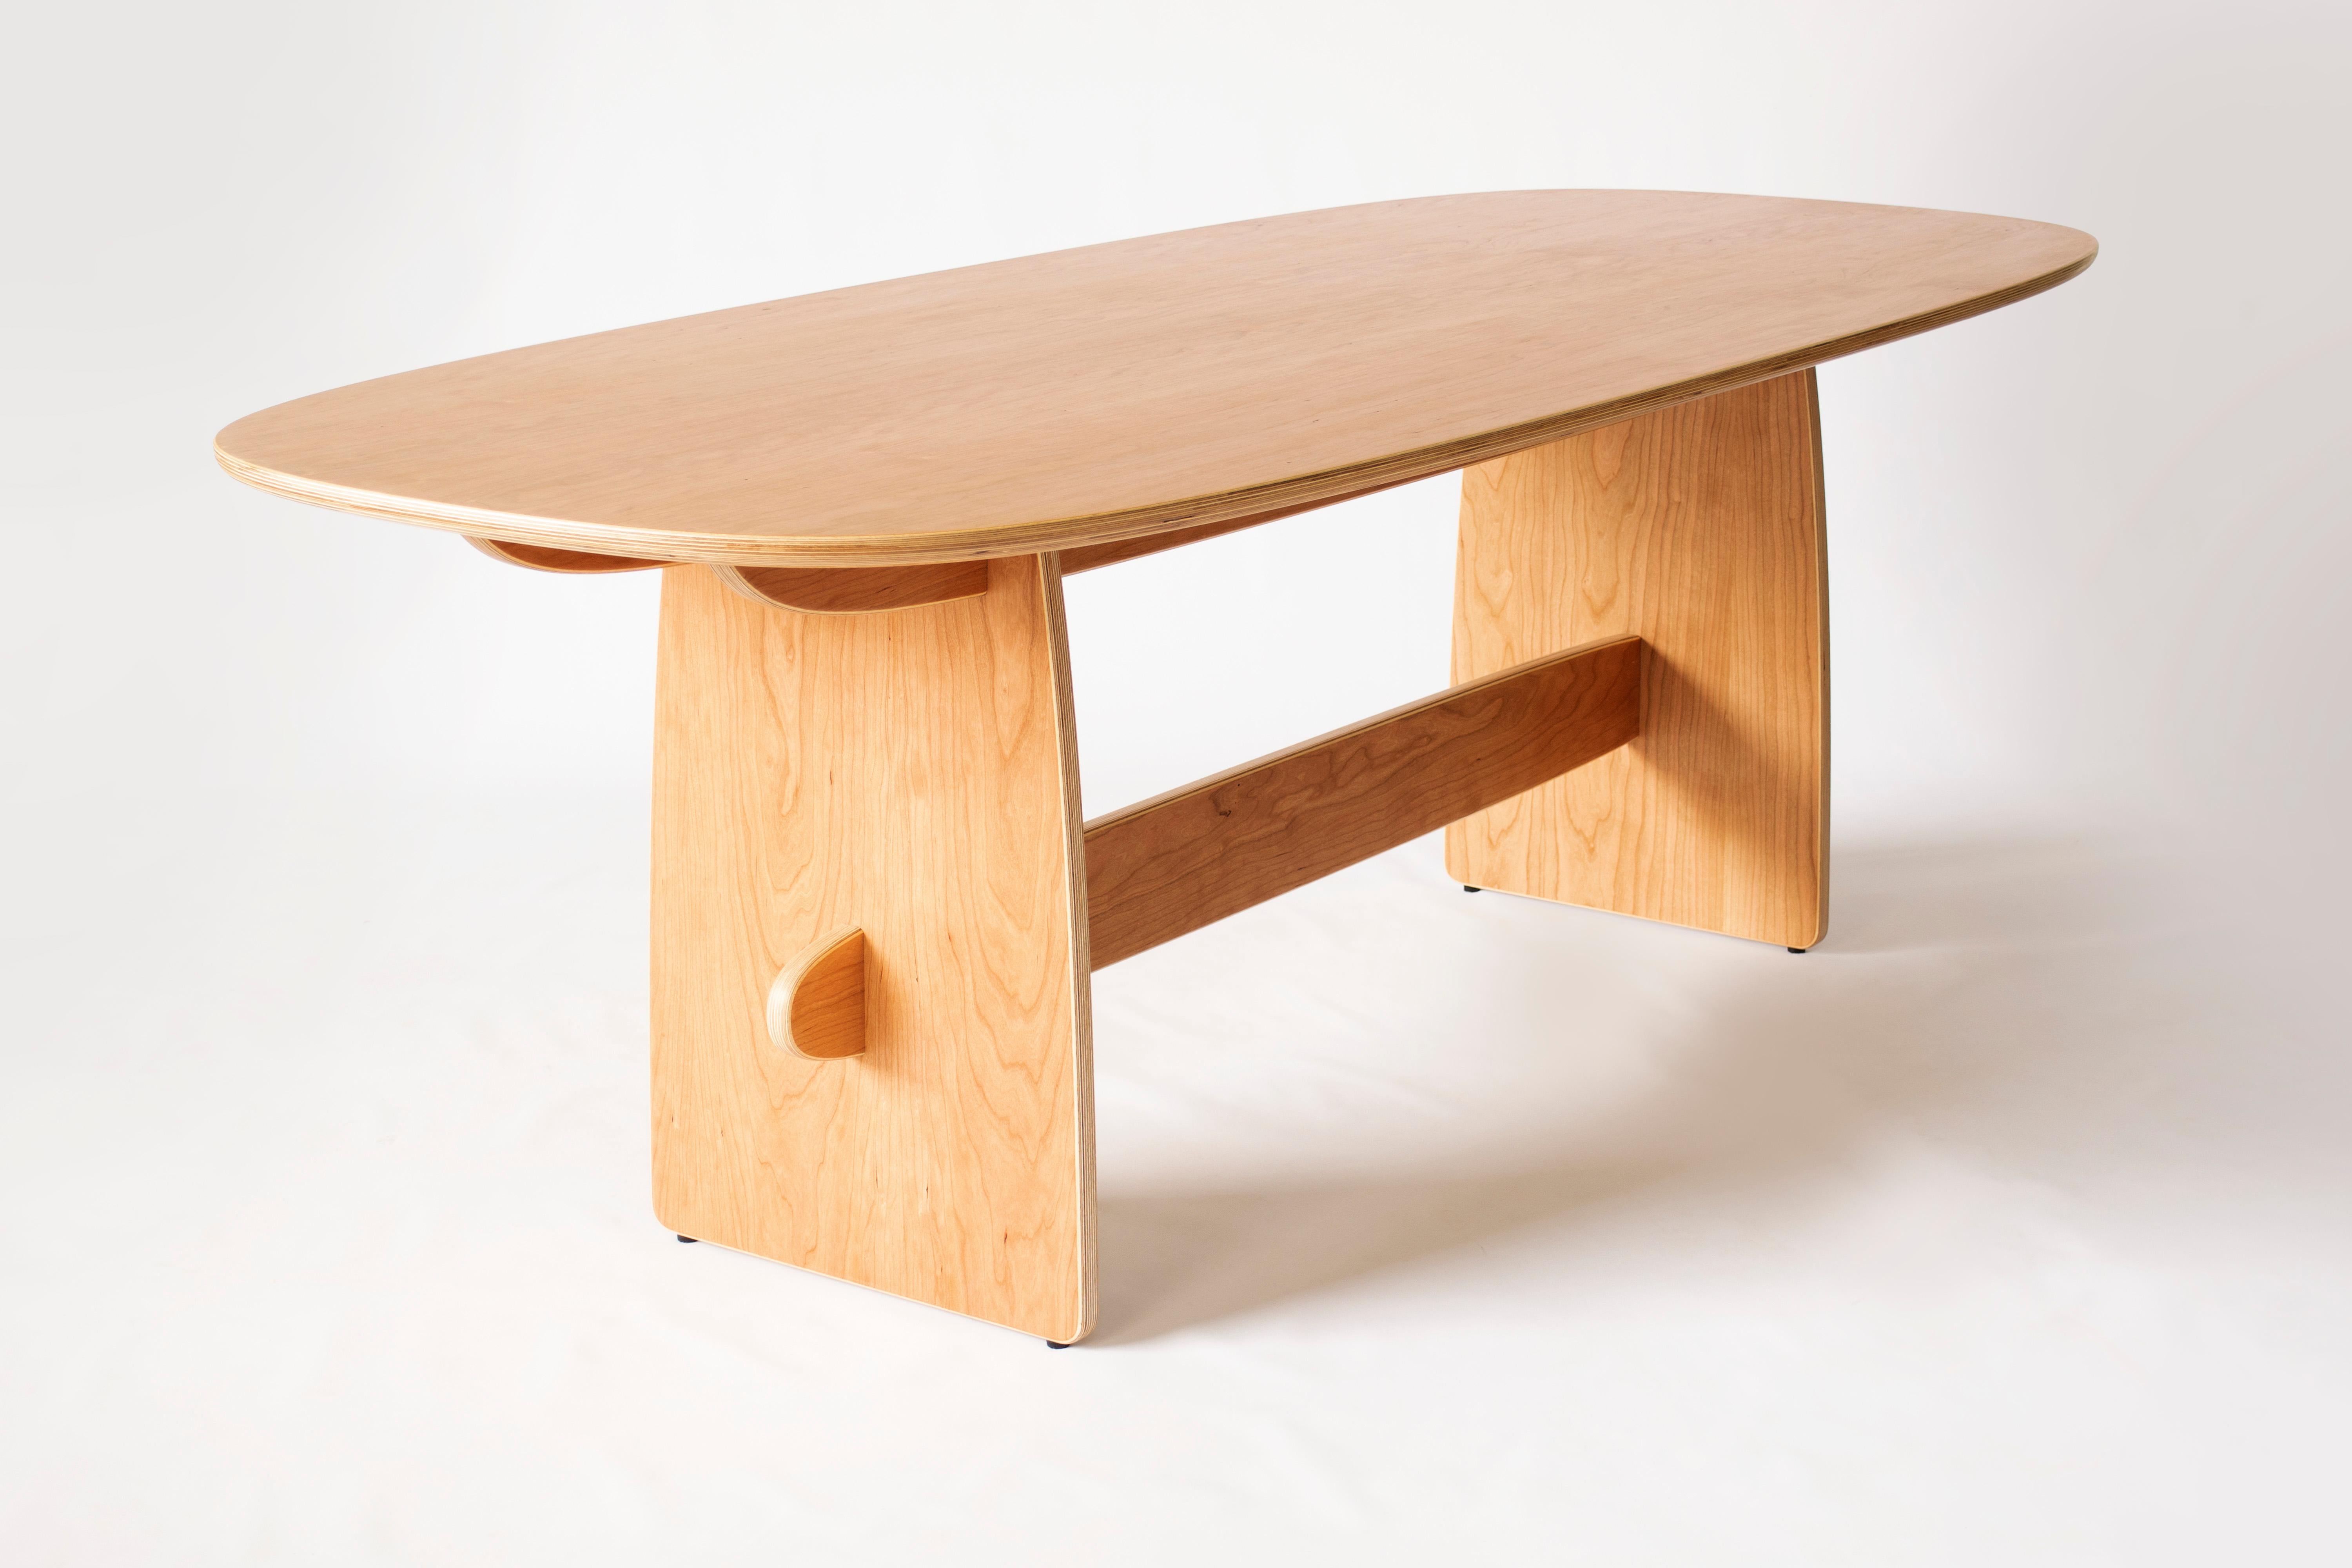 American Woodbine Dining Table in cherry veneer hardwood plywood by KLN Studio For Sale